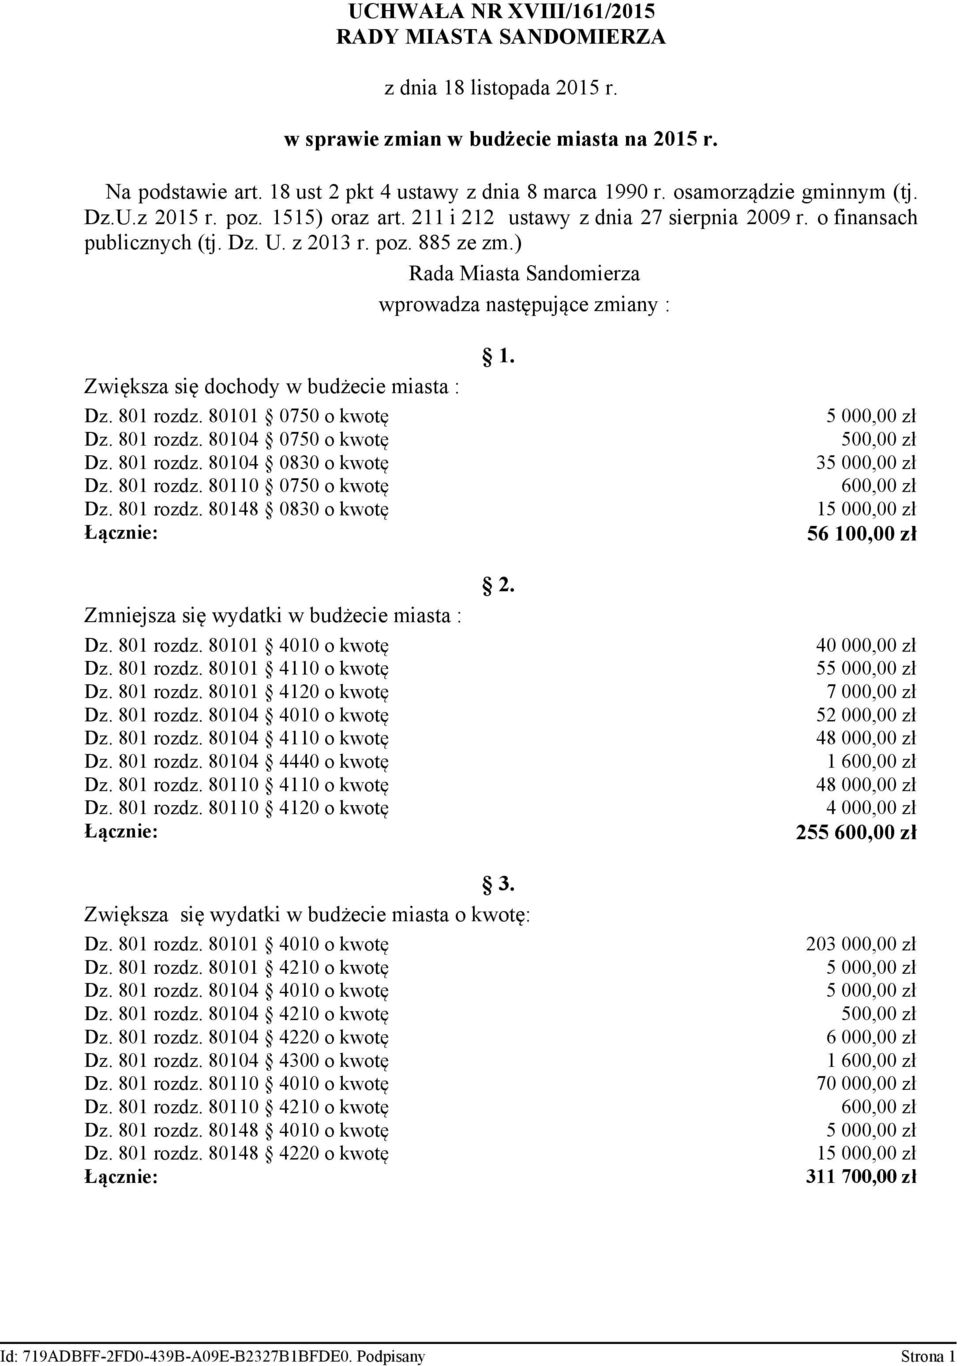 ) Rada Miasta Sandomierza wprowadza następujące zmiany : Zwiększa się dochody w budżecie miasta : Dz. 801 rozdz. 80101 0750 o kwotę Dz. 801 rozdz. 80104 0750 o kwotę Dz. 801 rozdz. 80104 0830 o kwotę Dz.